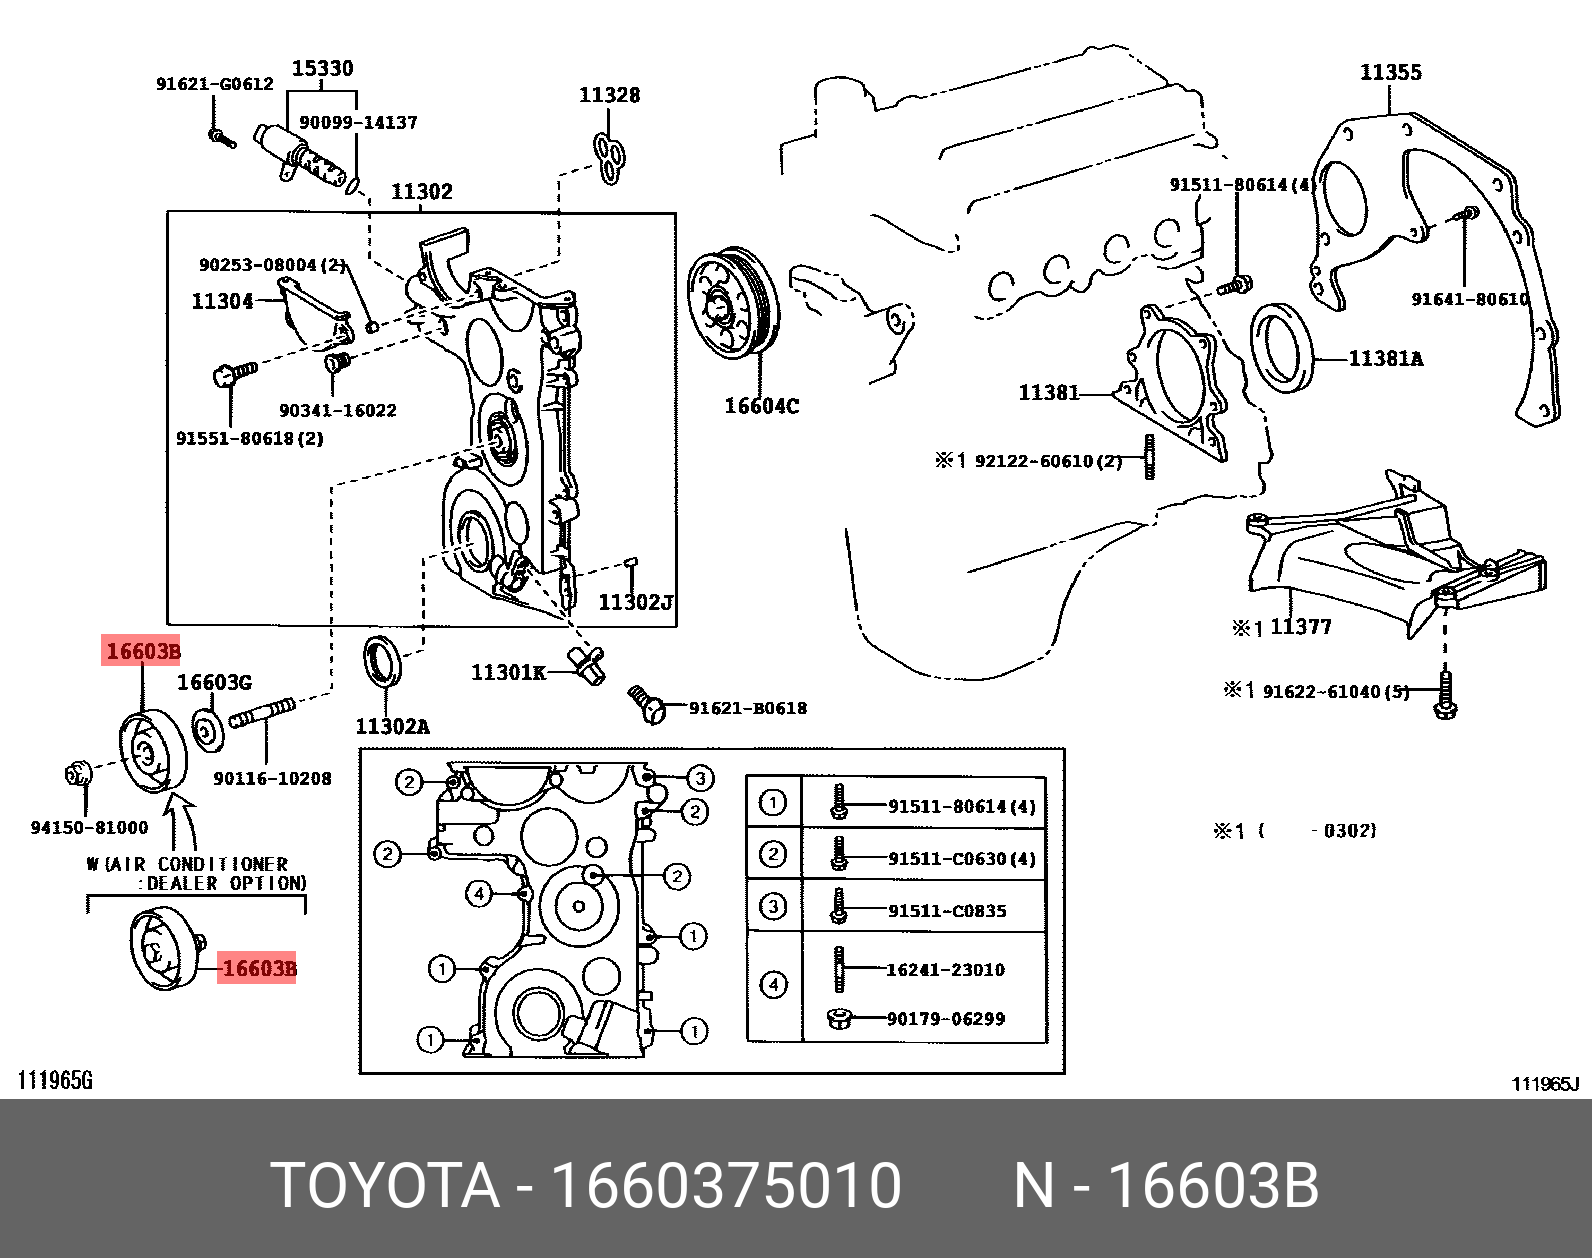 Ролик натяжной навесного оборудования - Toyota 16603-75010